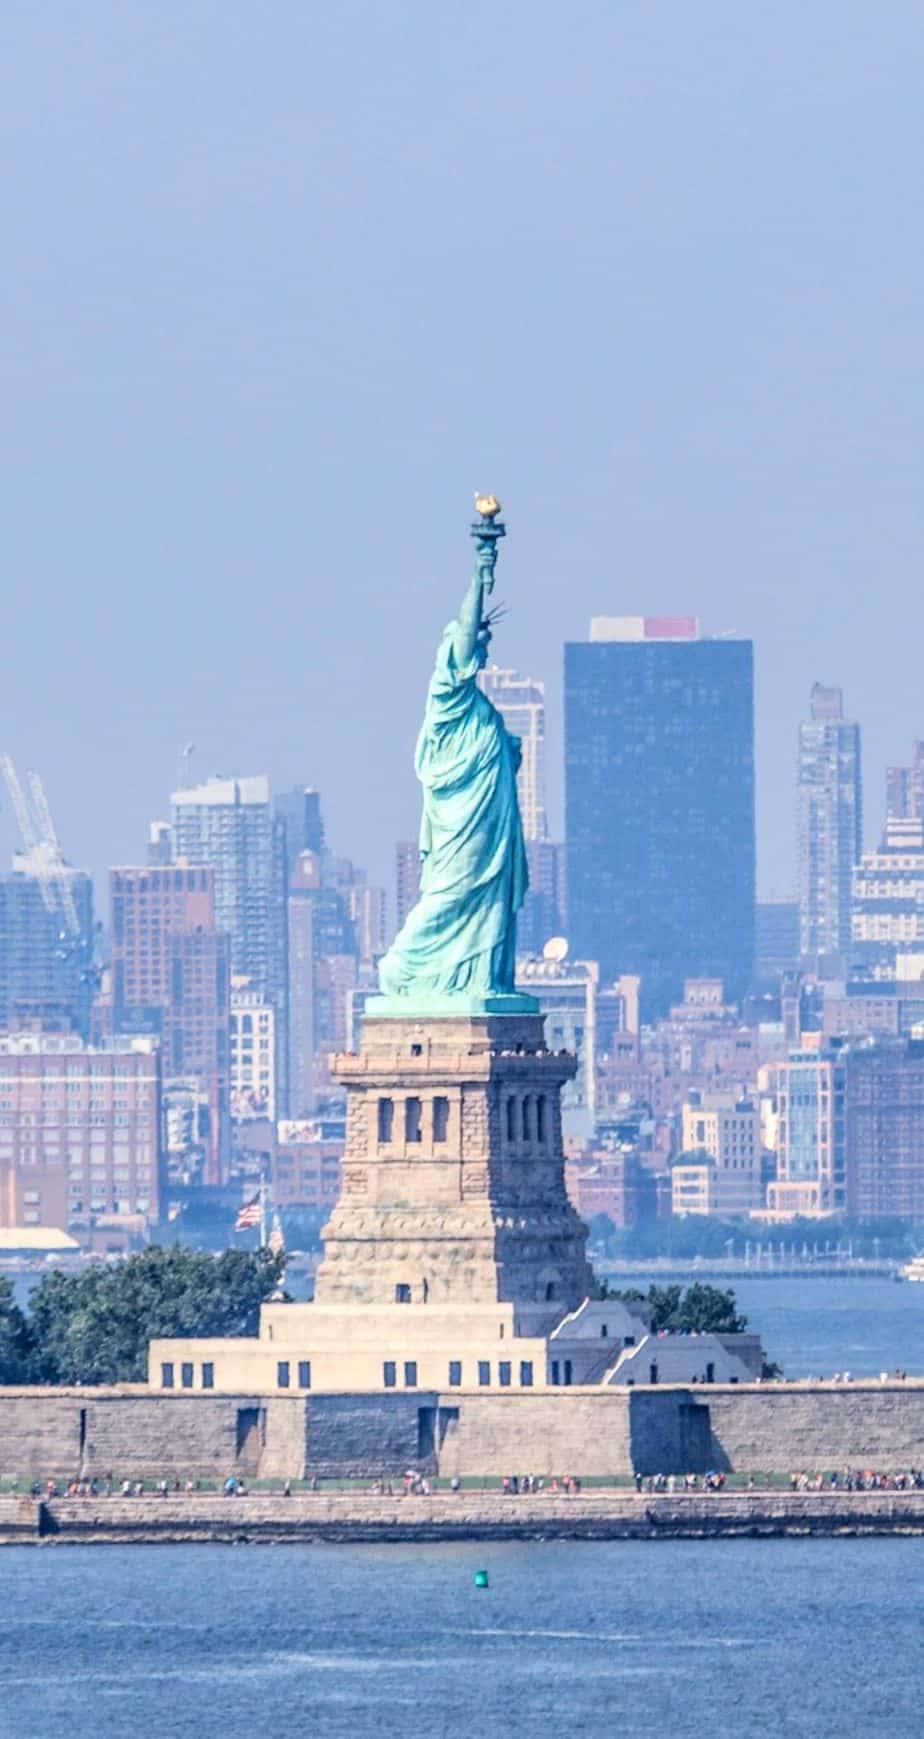 Statueof Liberty - Bester Hintergrund Für New York